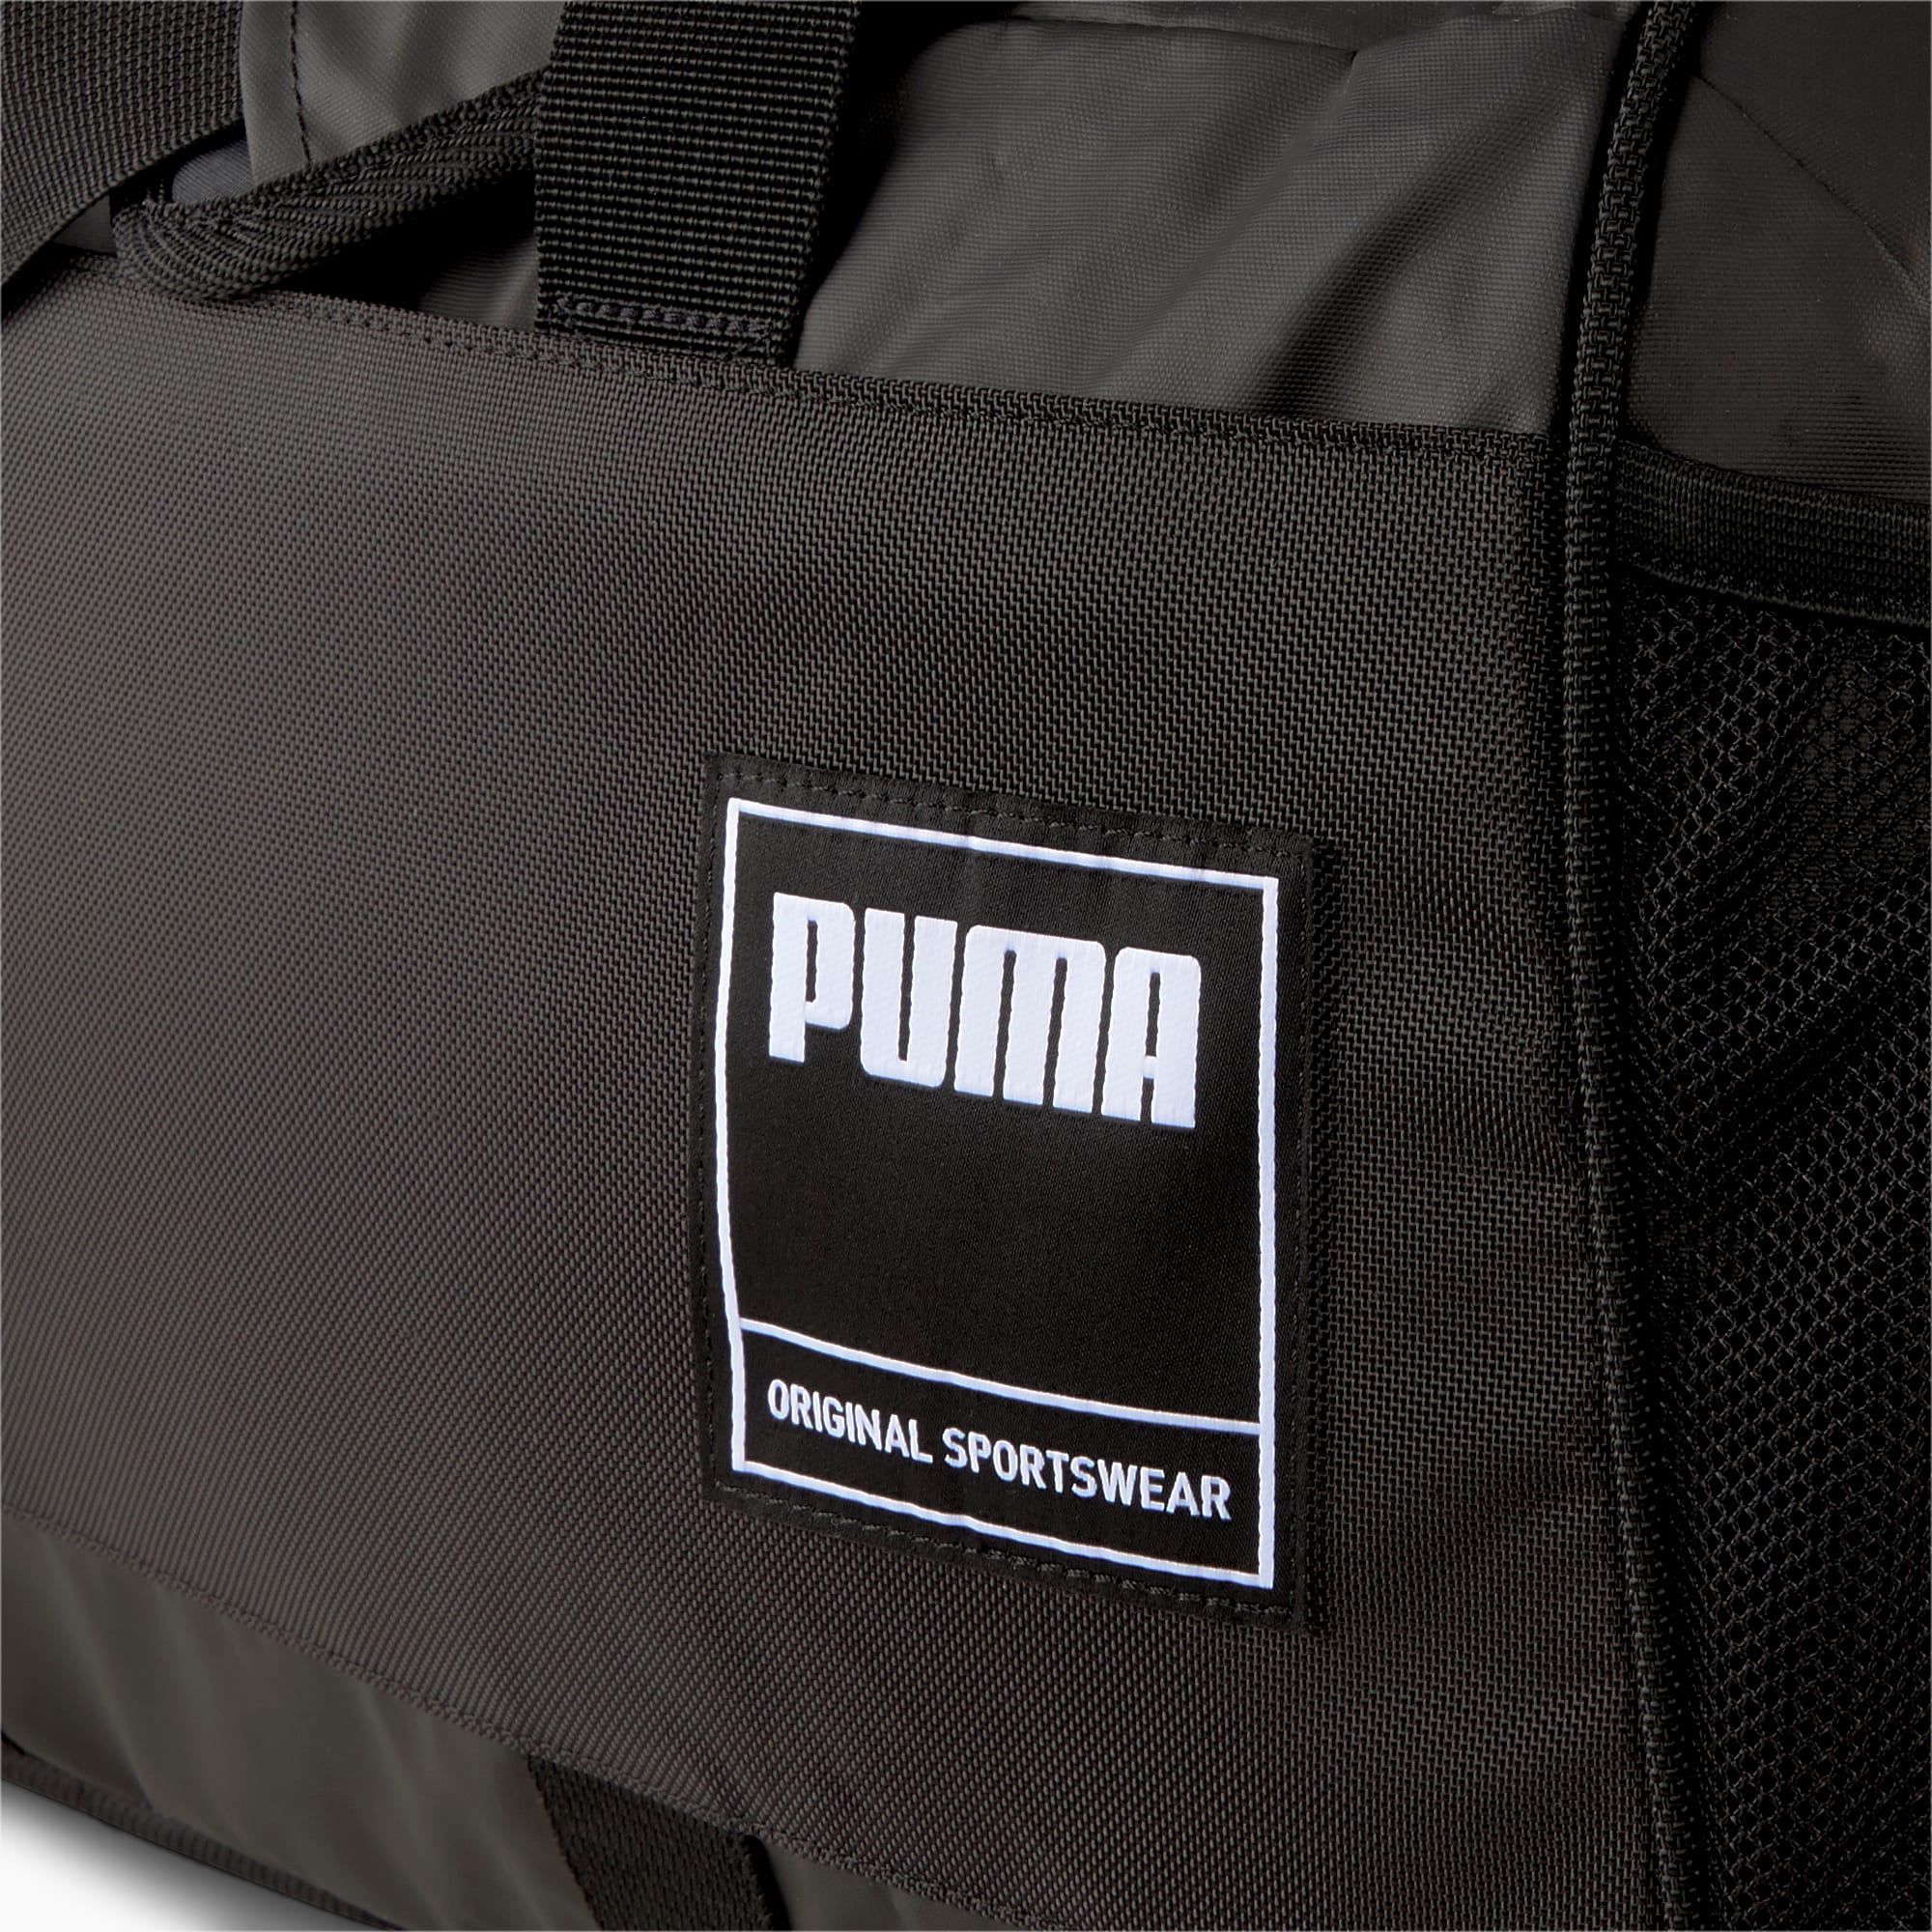 puma gym bag 2015